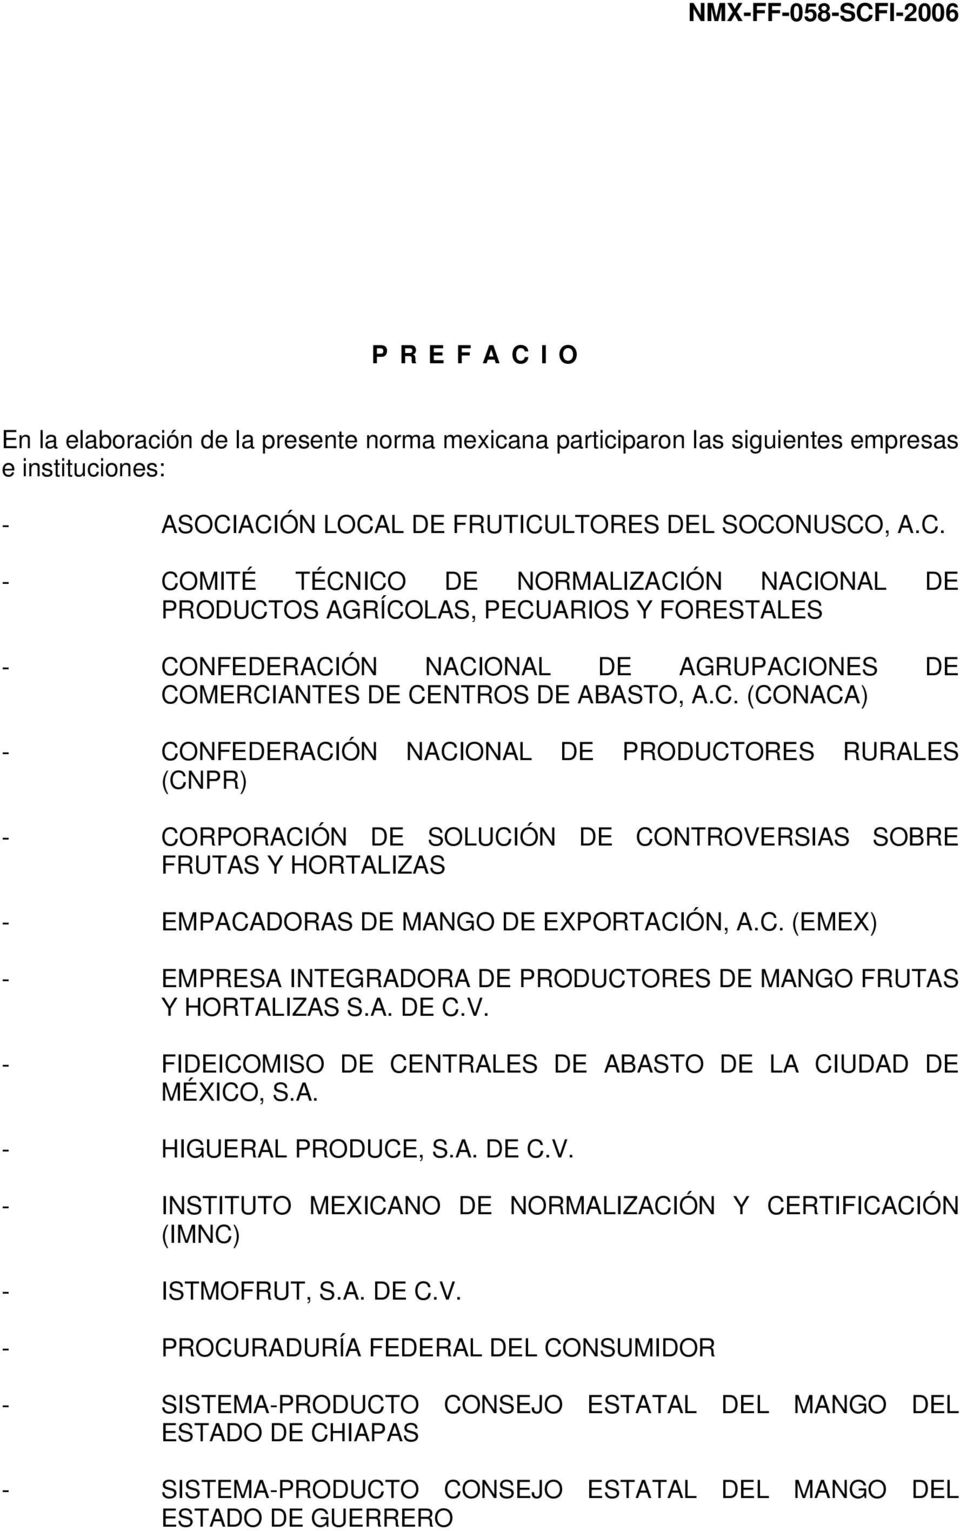 A. DE C.V. - FIDEICOMISO DE CENTRALES DE ABASTO DE LA CIUDAD DE MÉXICO, S.A. - HIGUERAL PRODUCE, S.A. DE C.V. - INSTITUTO MEXICANO DE NORMALIZACIÓN Y CERTIFICACIÓN (IMNC) - ISTMOFRUT, S.A. DE C.V. - PROCURADURÍA FEDERAL DEL CONSUMIDOR - SISTEMA-PRODUCTO CONSEJO ESTATAL DEL MANGO DEL ESTADO DE CHIAPAS - SISTEMA-PRODUCTO CONSEJO ESTATAL DEL MANGO DEL ESTADO DE GUERRERO